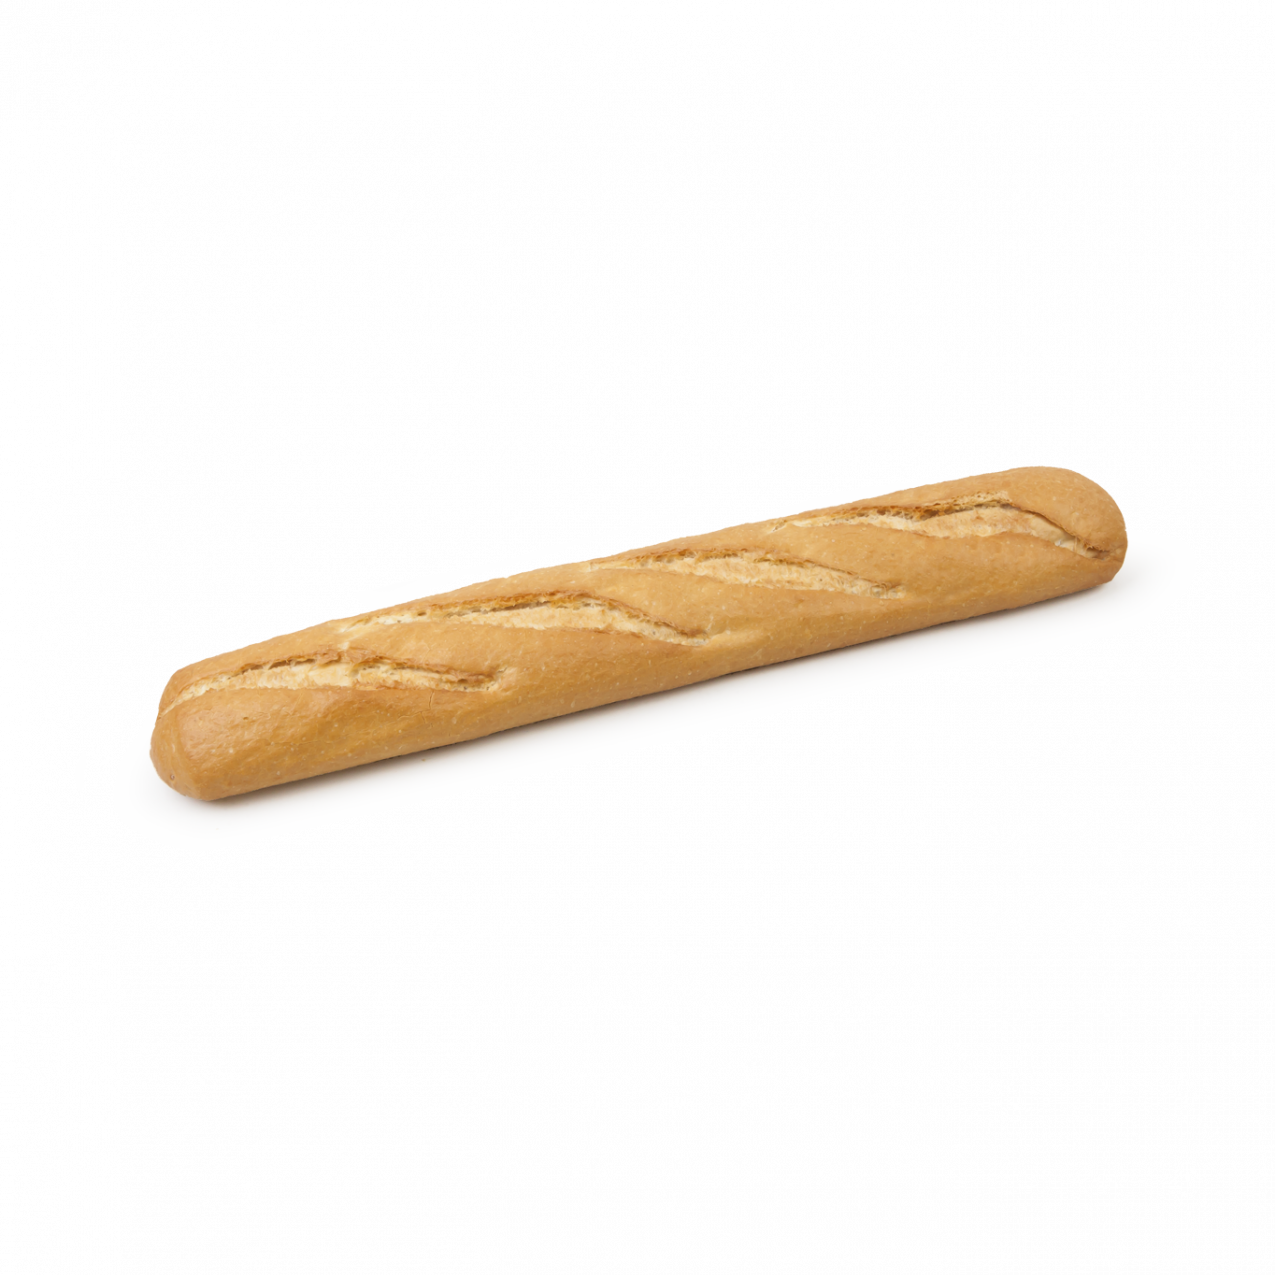 Barra de pan